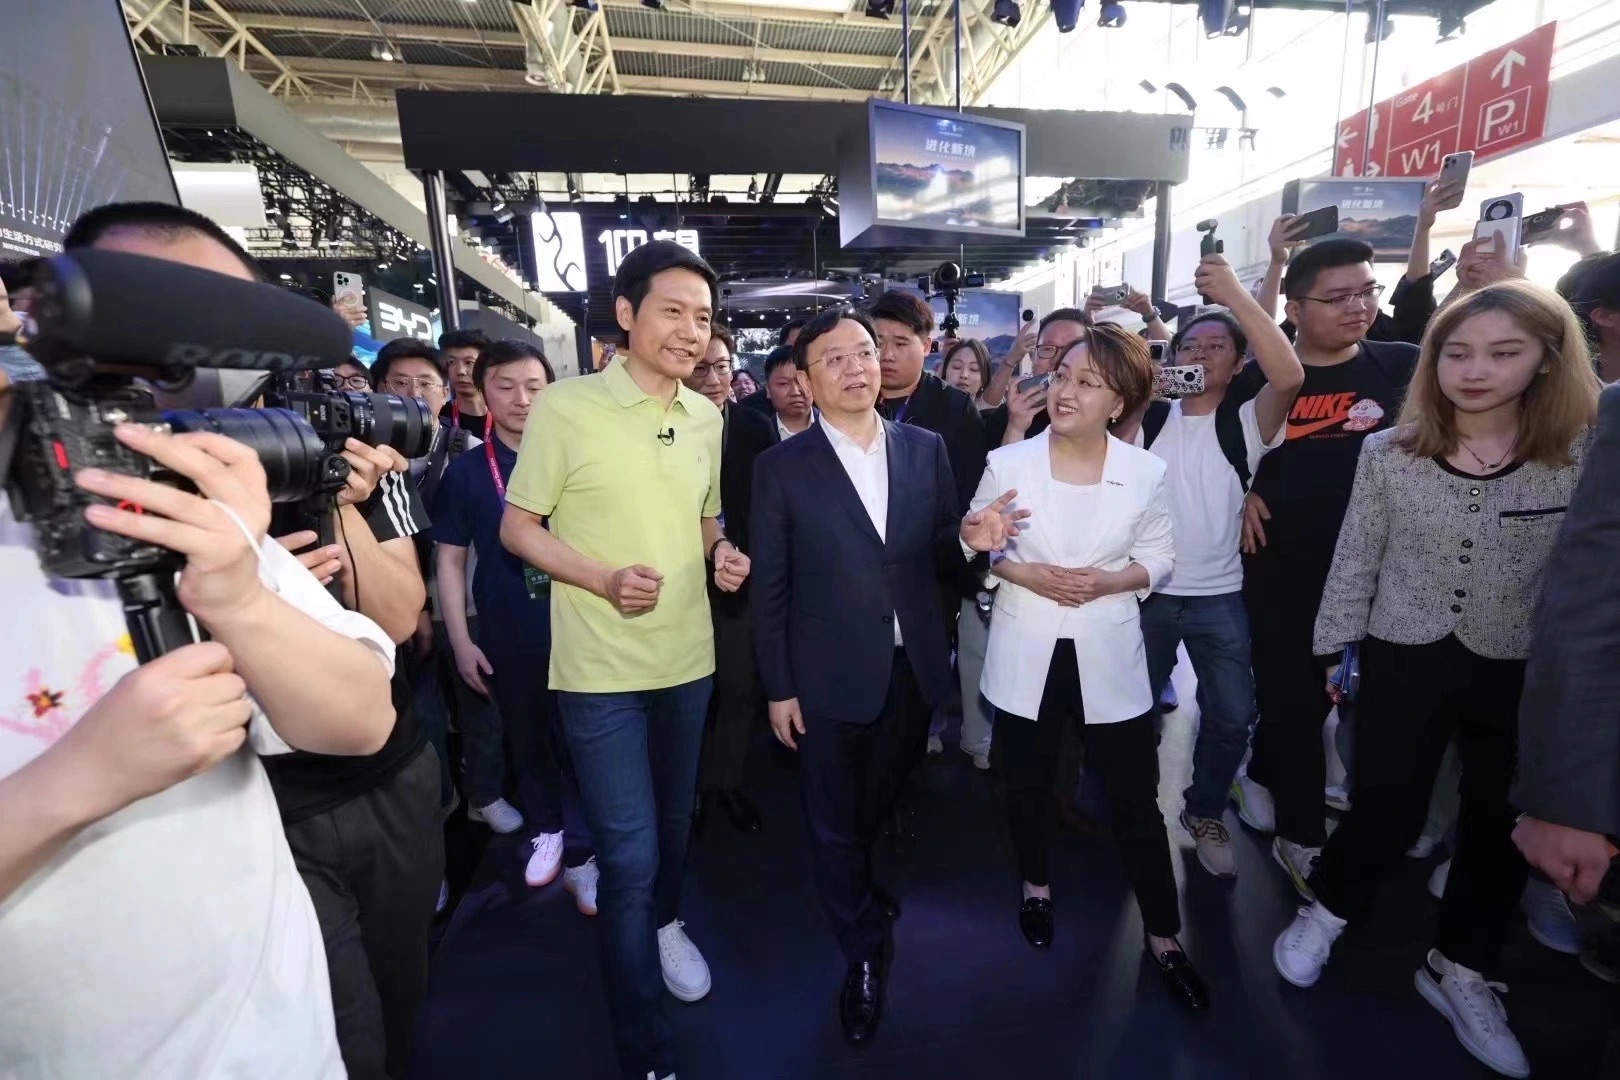 Sở hữu thương hiệu xe riêng, CEO Xiaomi Lôi Quân vẫn hết lời khen ngợi xe điện BYD: "Nghe tên đã thấy oai, chắc chắn sẽ bán chạy"